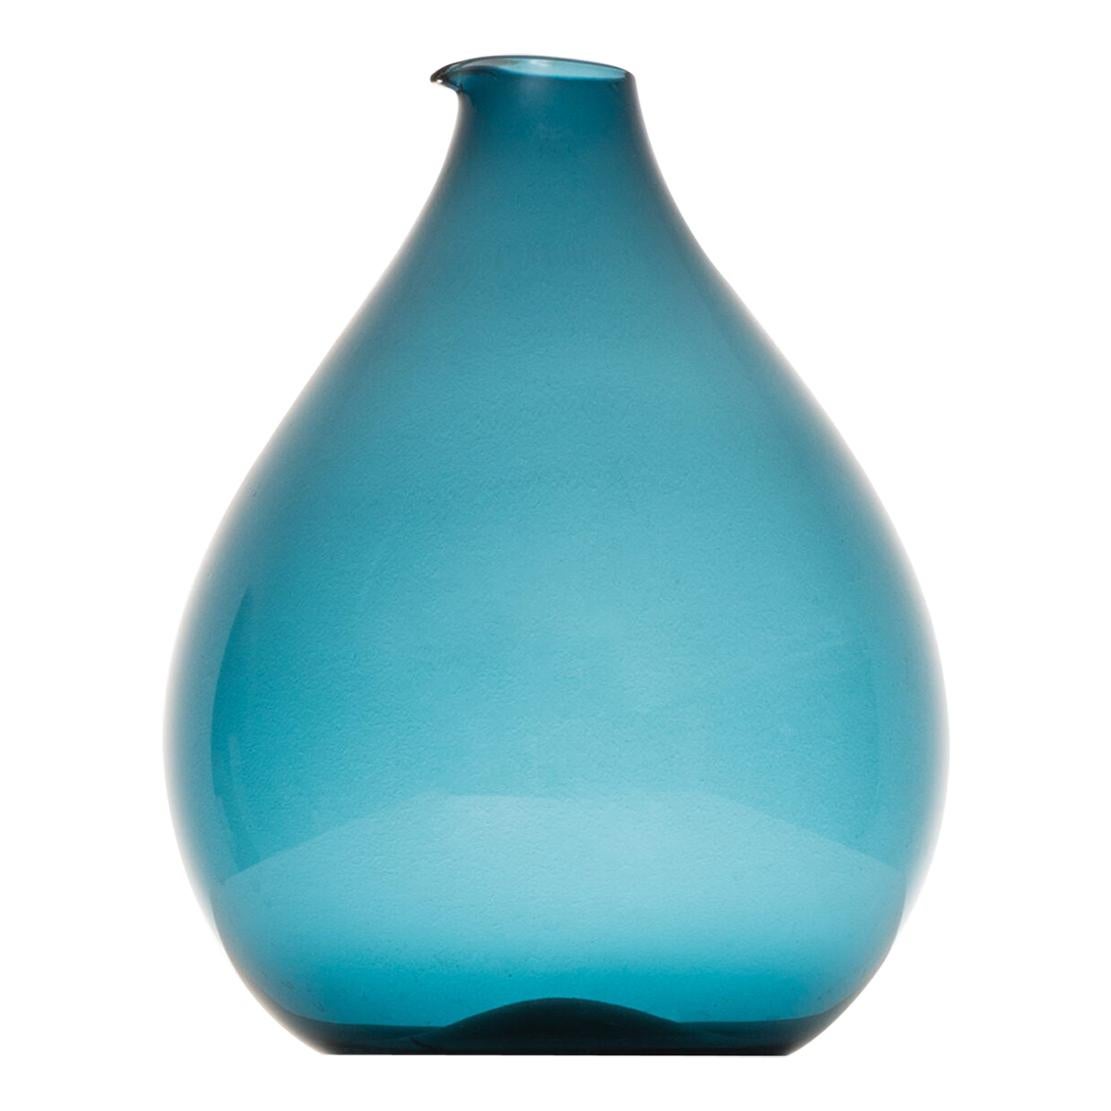 Kjell Blomberg Vase, hergestellt von Gullaskruf in Schweden